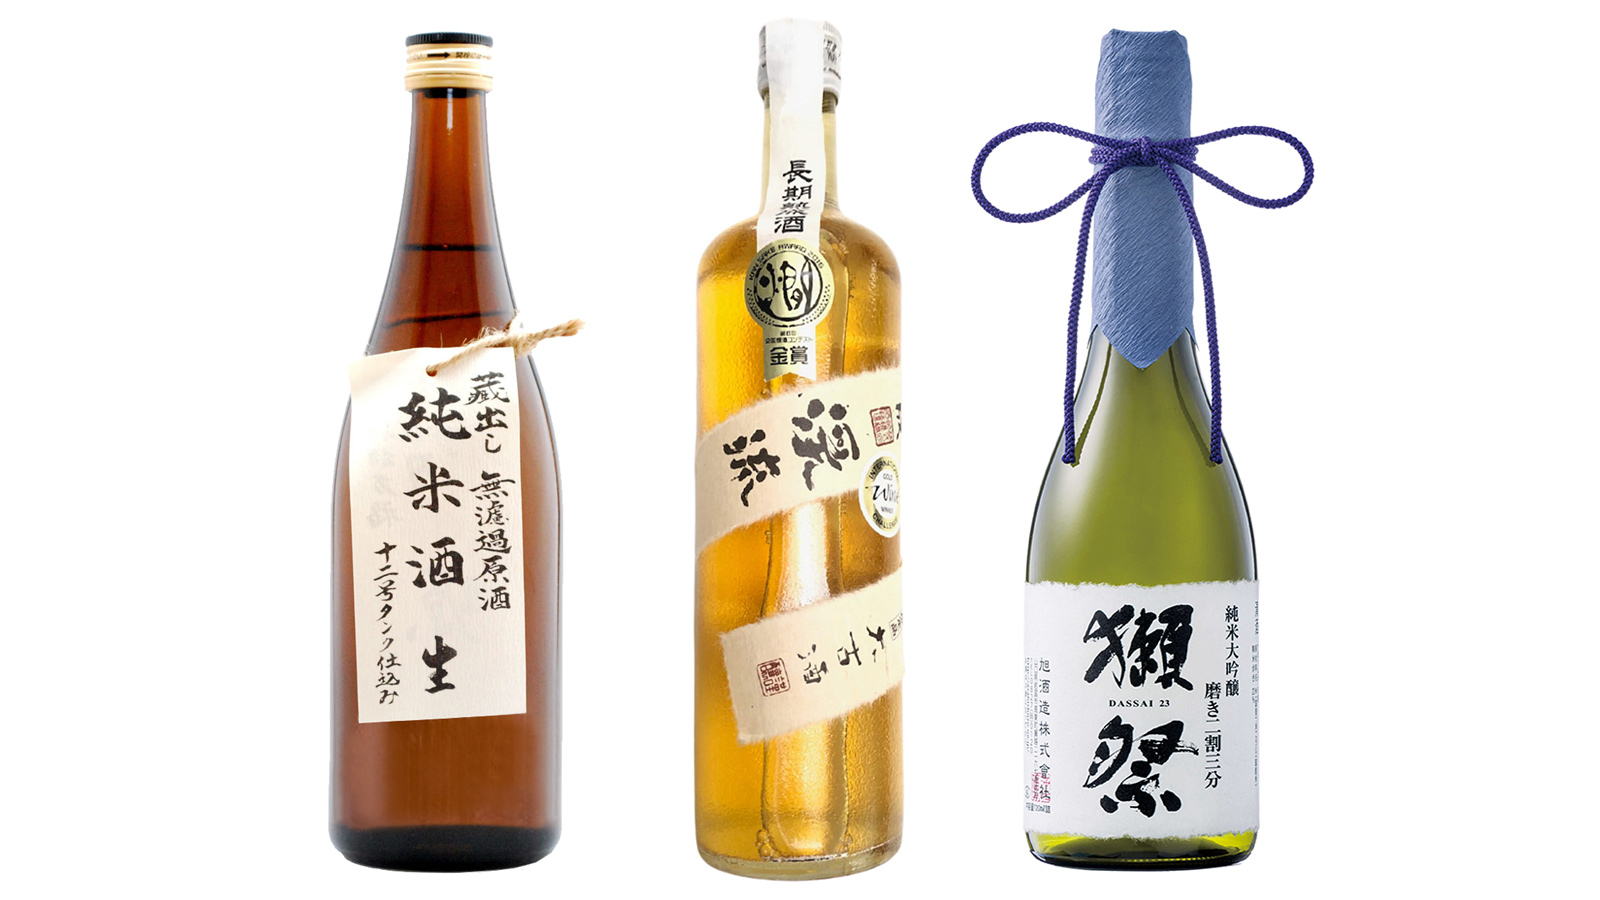 Sake wines